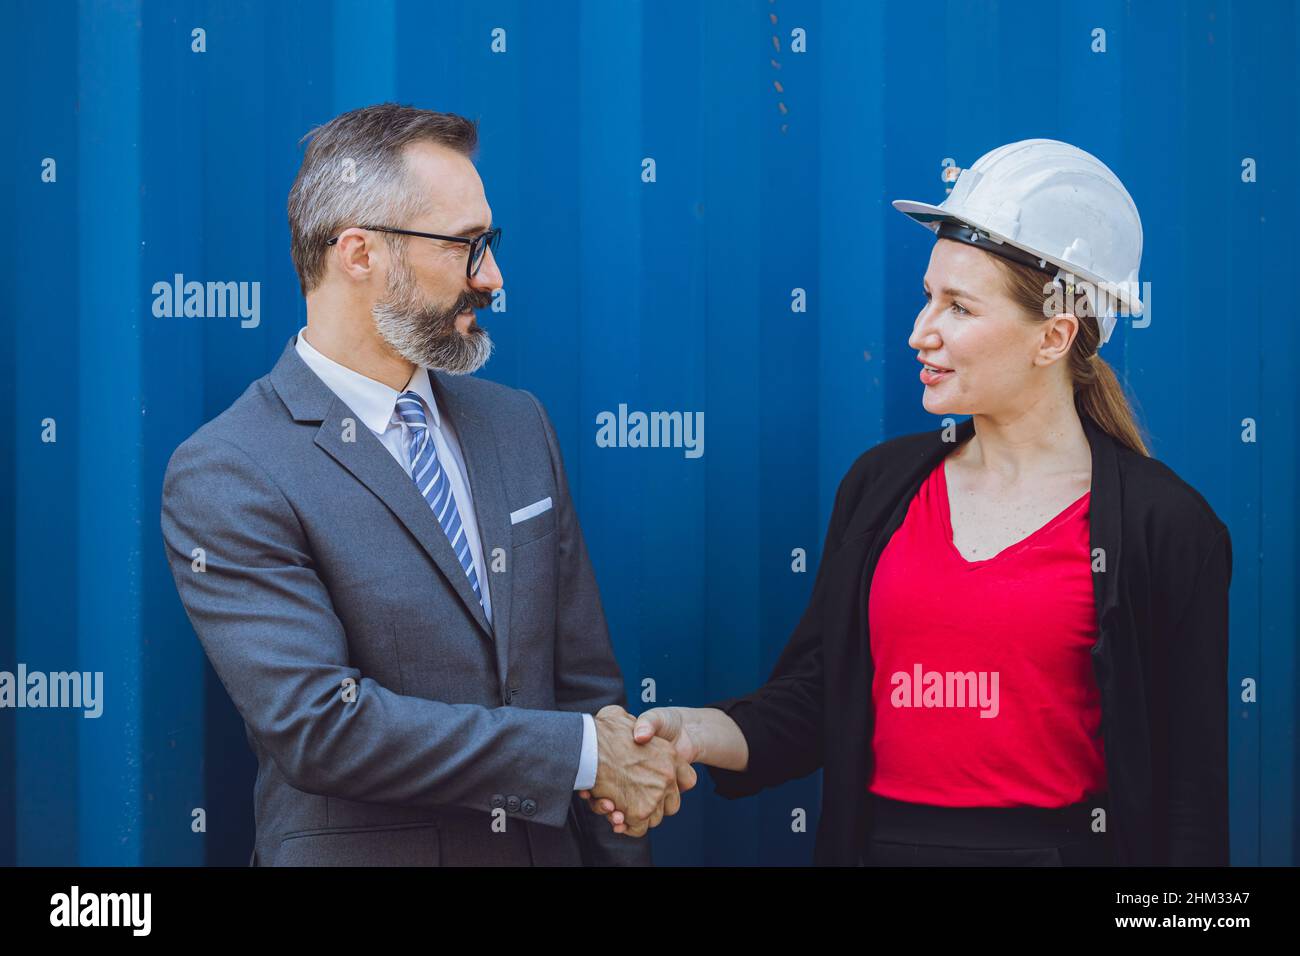 Professioneller Geschäftsmann Investor Handshake Deal Projekt mit arbeitenden Frau in der Ingenieurindustrie Stockfoto